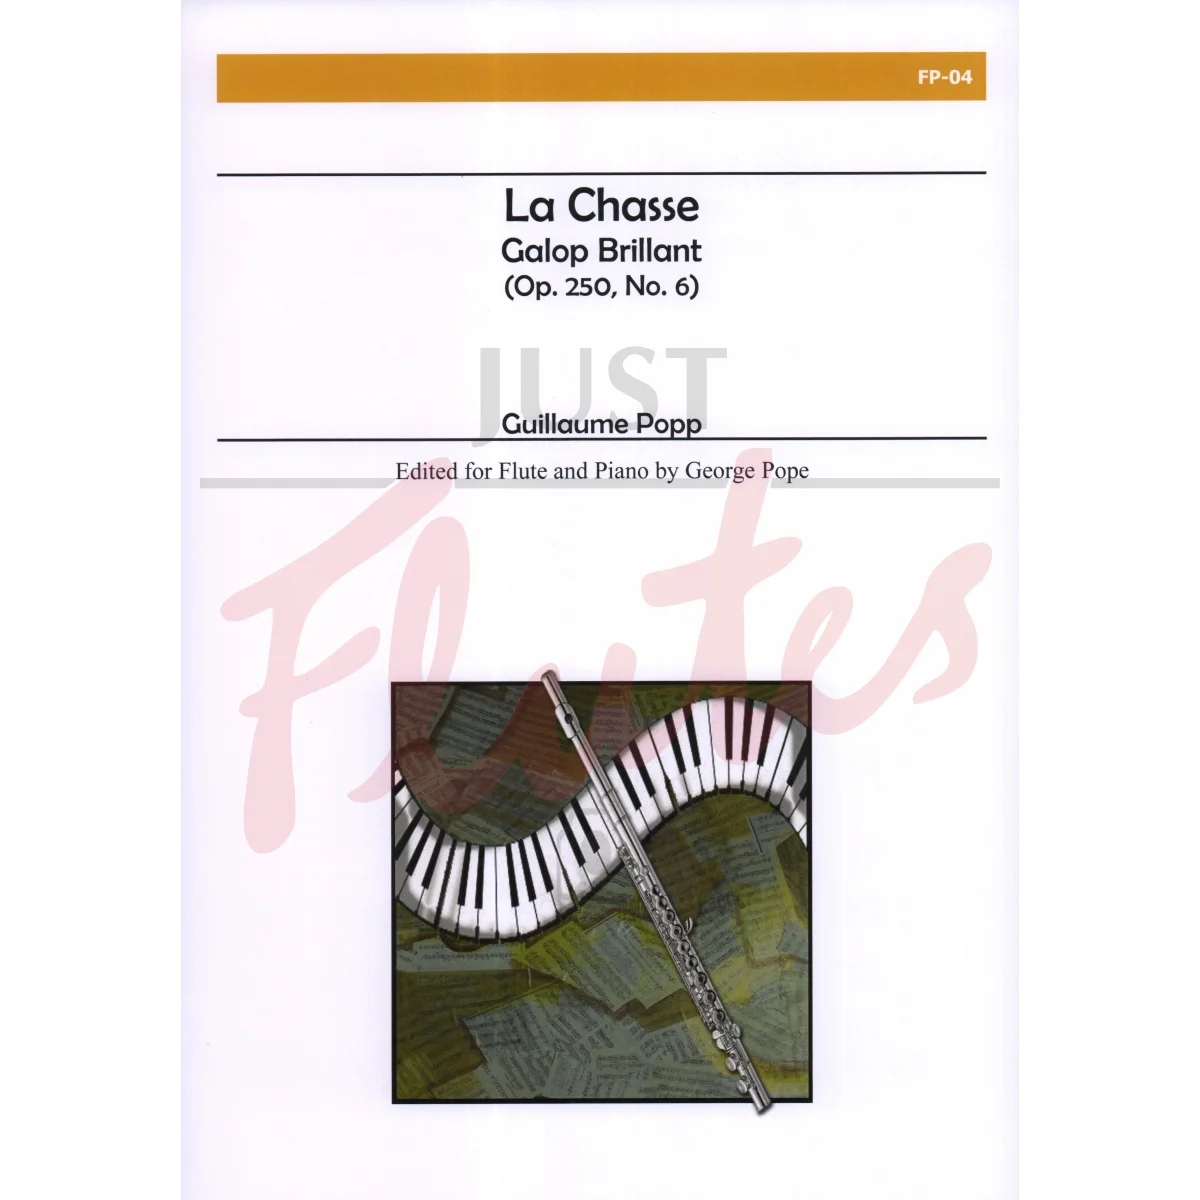 La Chasse - Galop Brillant for Flute and Piano